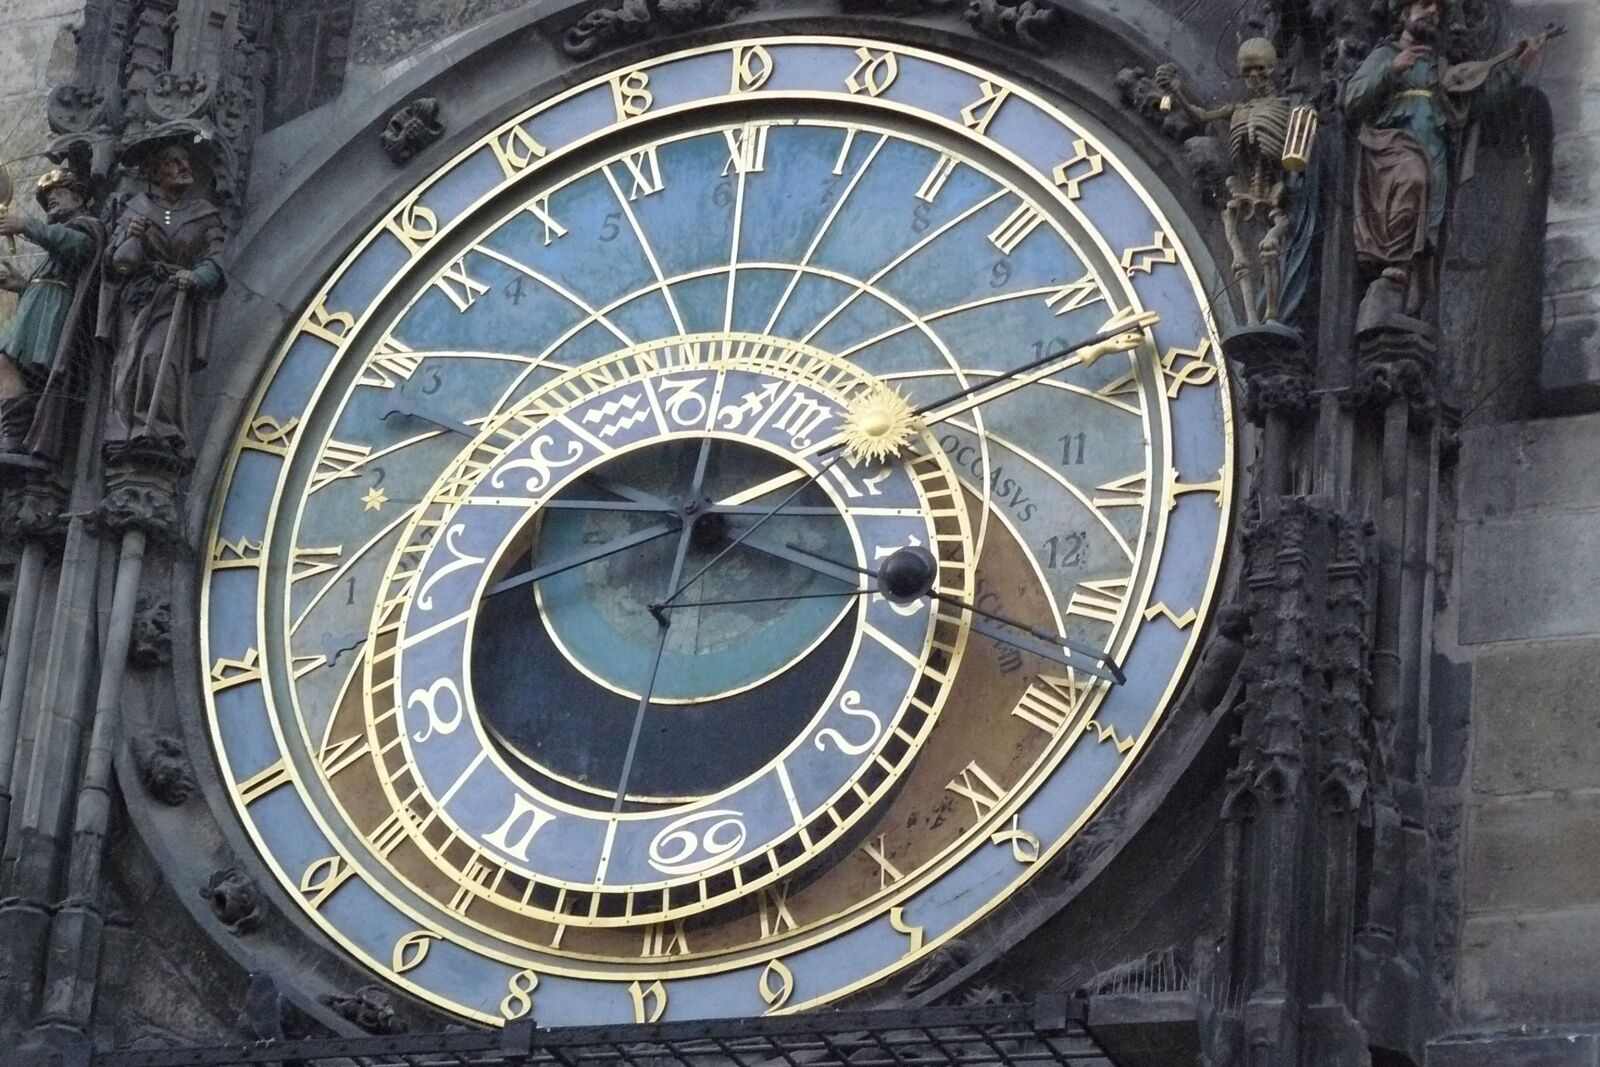 Panasonic DMC-FZ8 sample photo. Prague, clock, astronomical photography